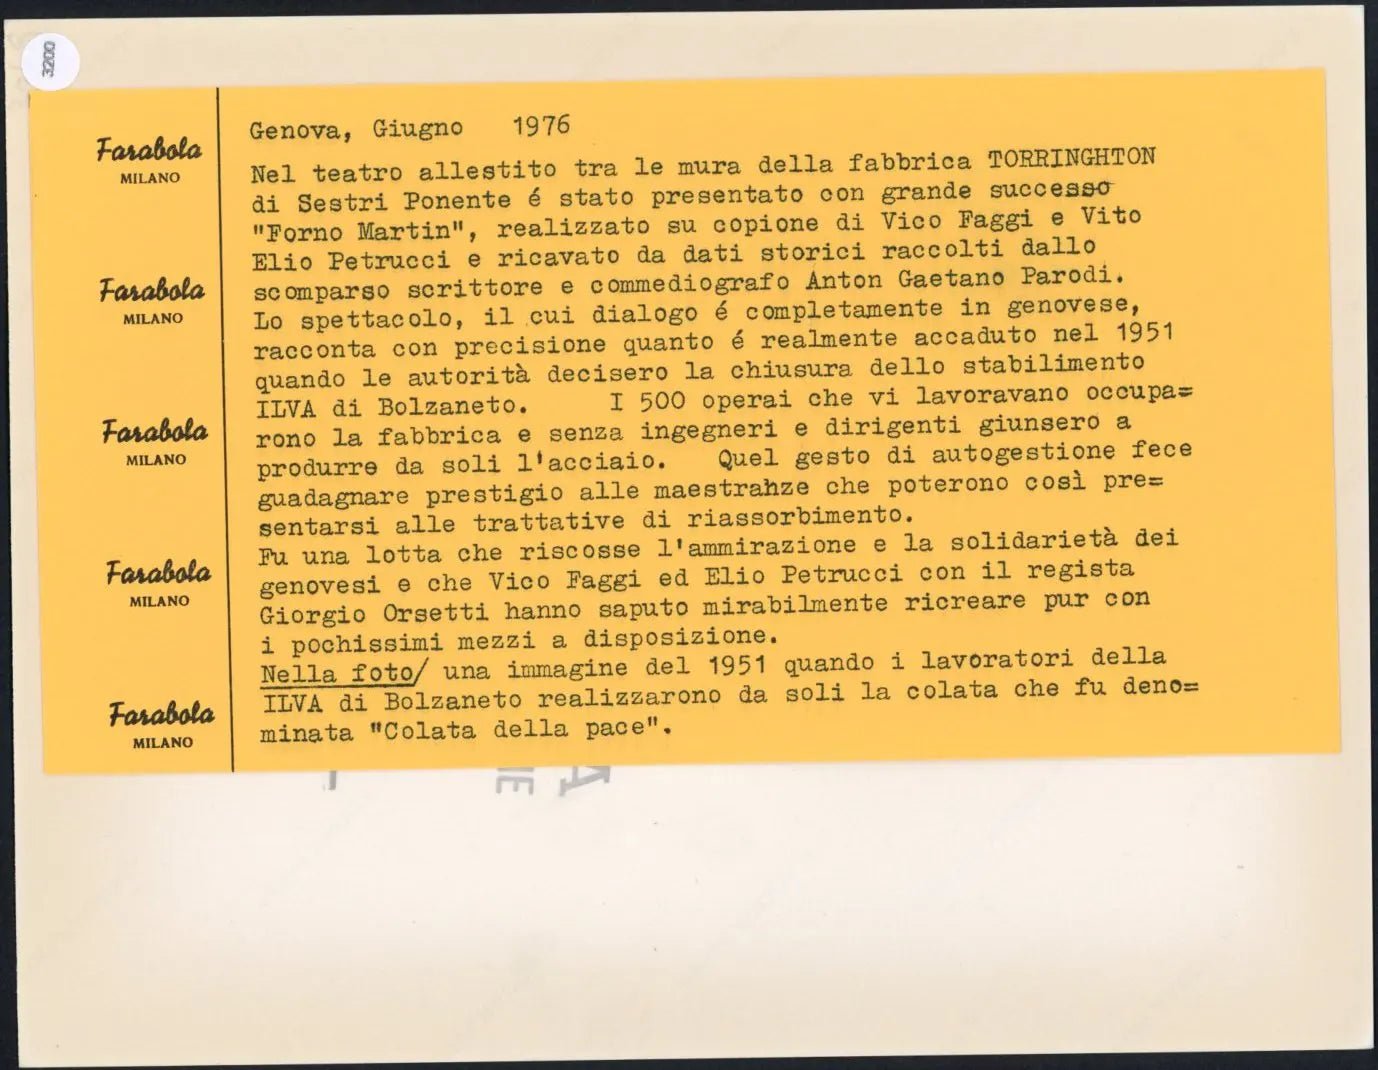 Colata della pace all'Illva di Bolzaneto 1951 Ft 3200 - Stampa 24x18 cm - Farabola Stampa ai sali d'argento